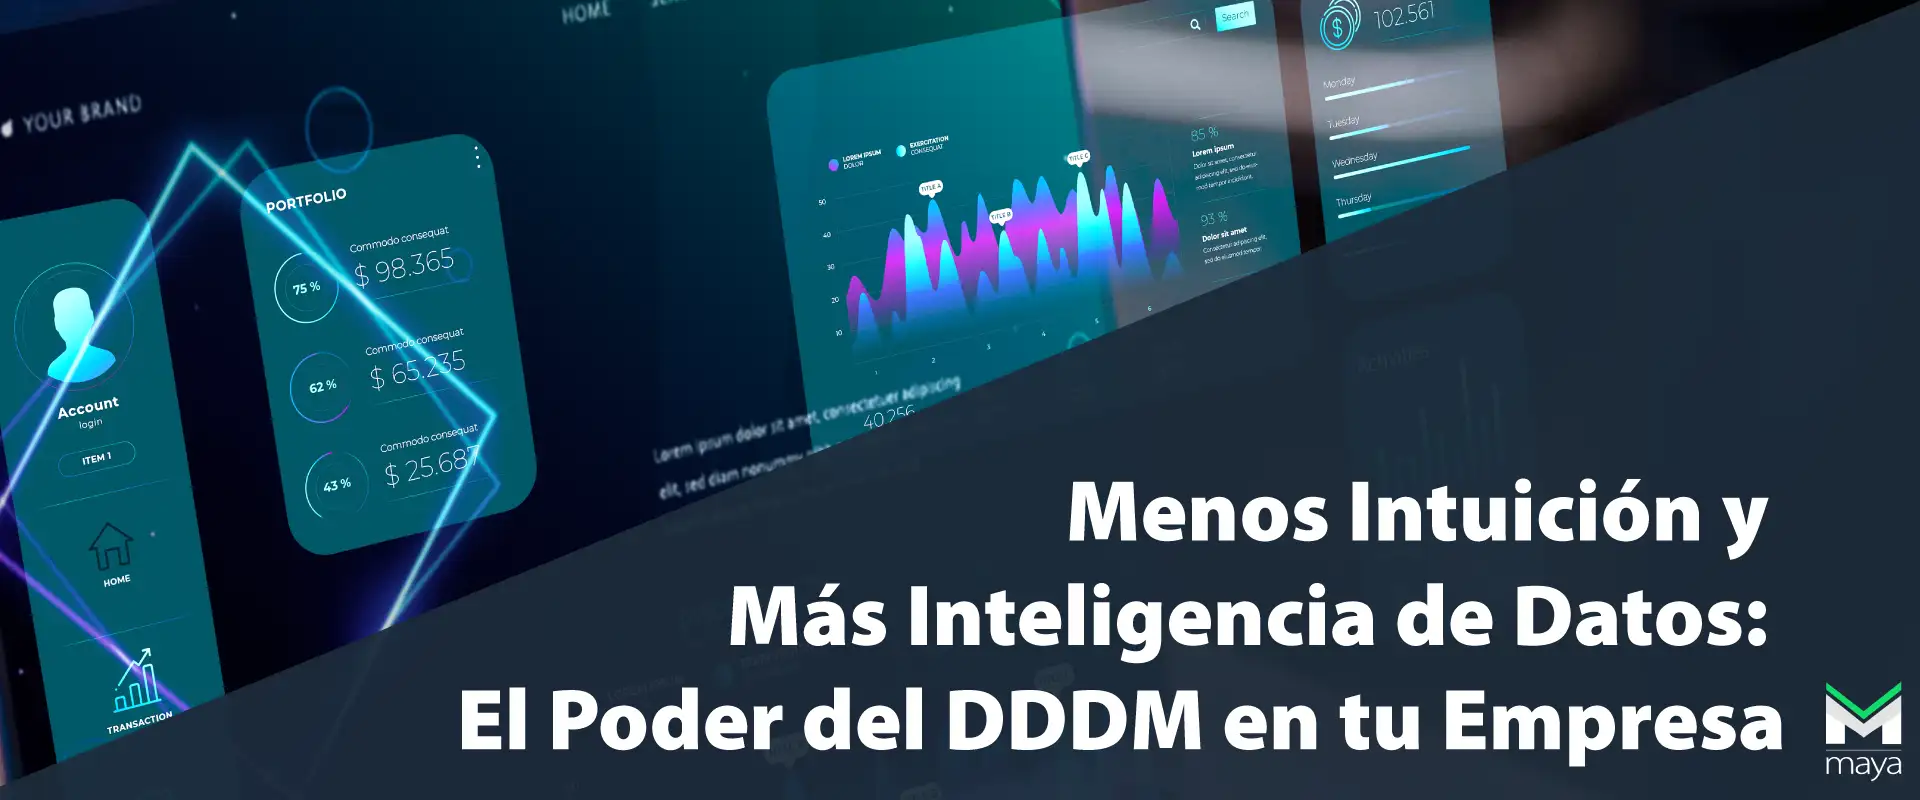 Inteligencia de Datos: El Poder del DDDM en tu Empresa